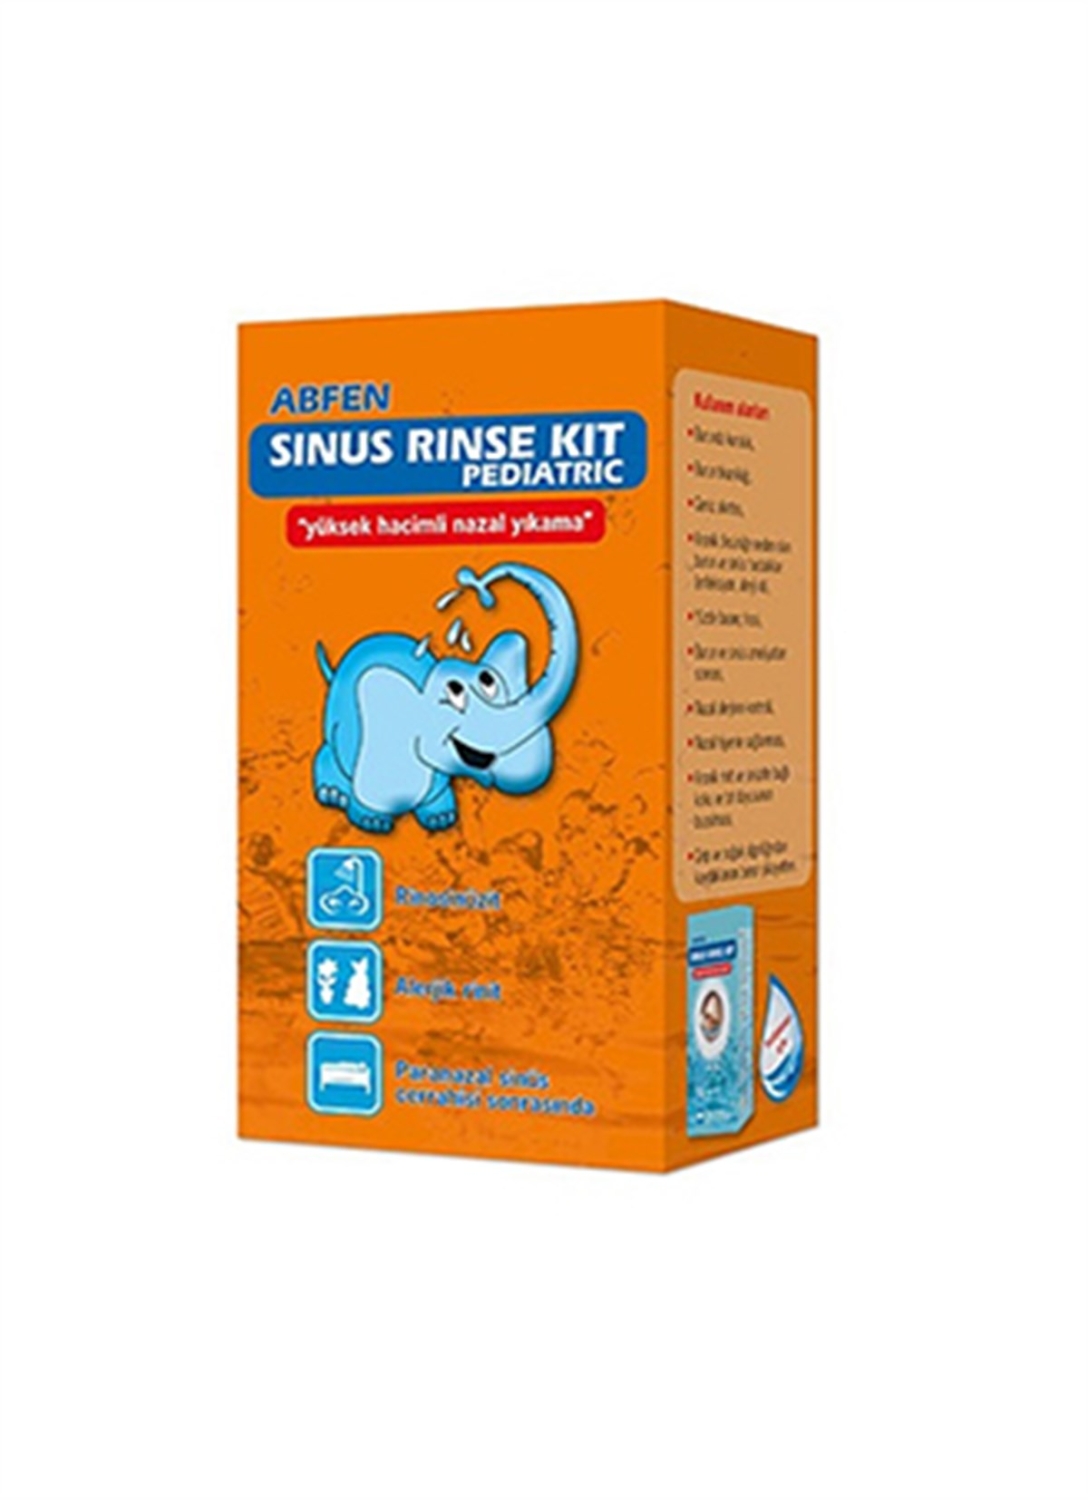 Abfen Sinus Rinse Kit Pediatrik - 1